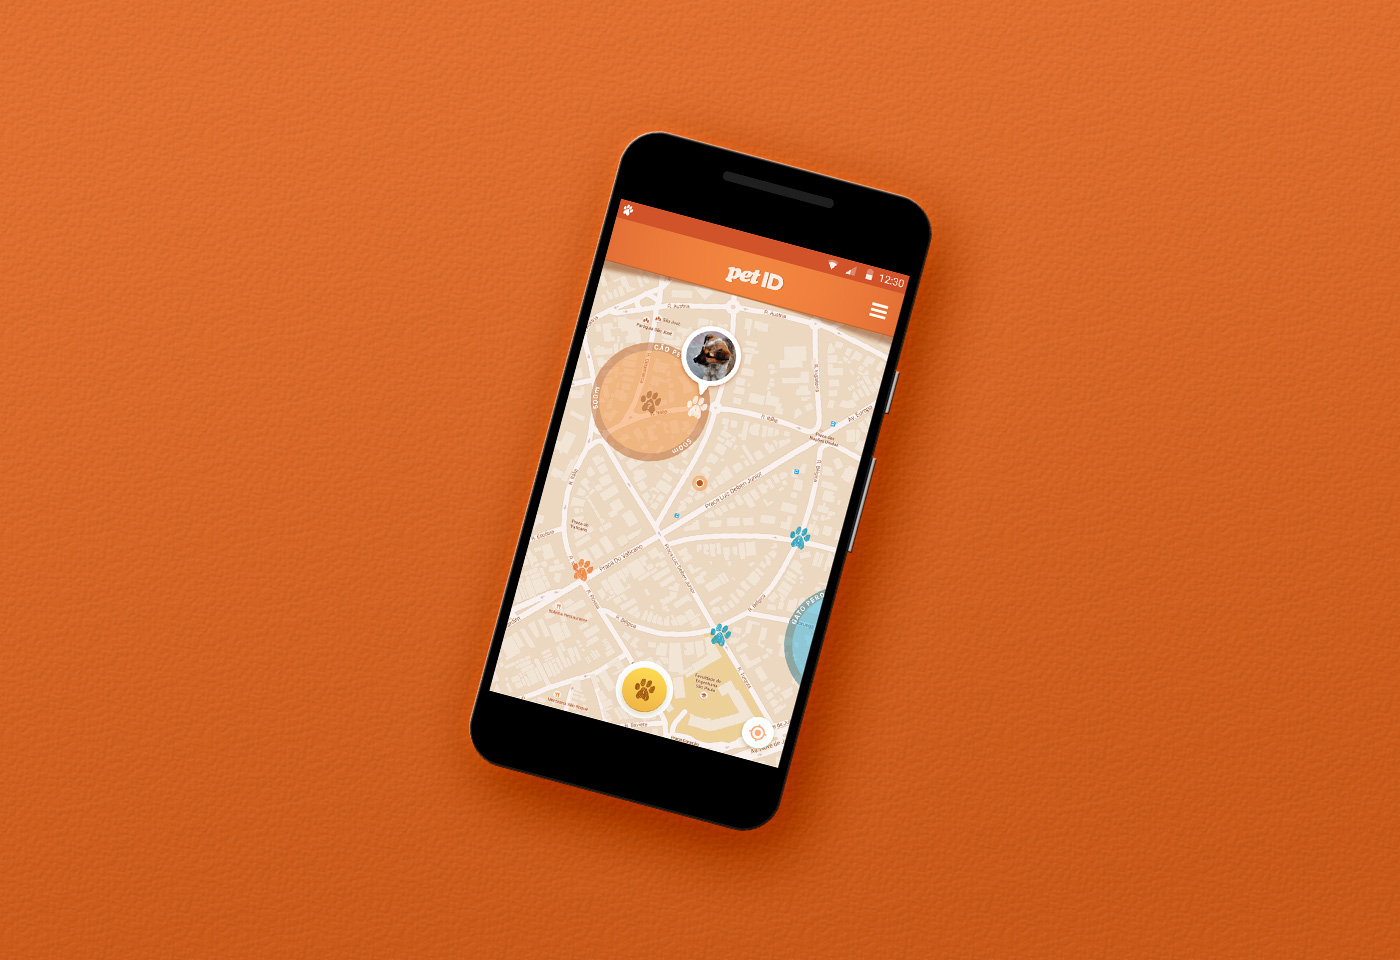 Pet app design orange mobile